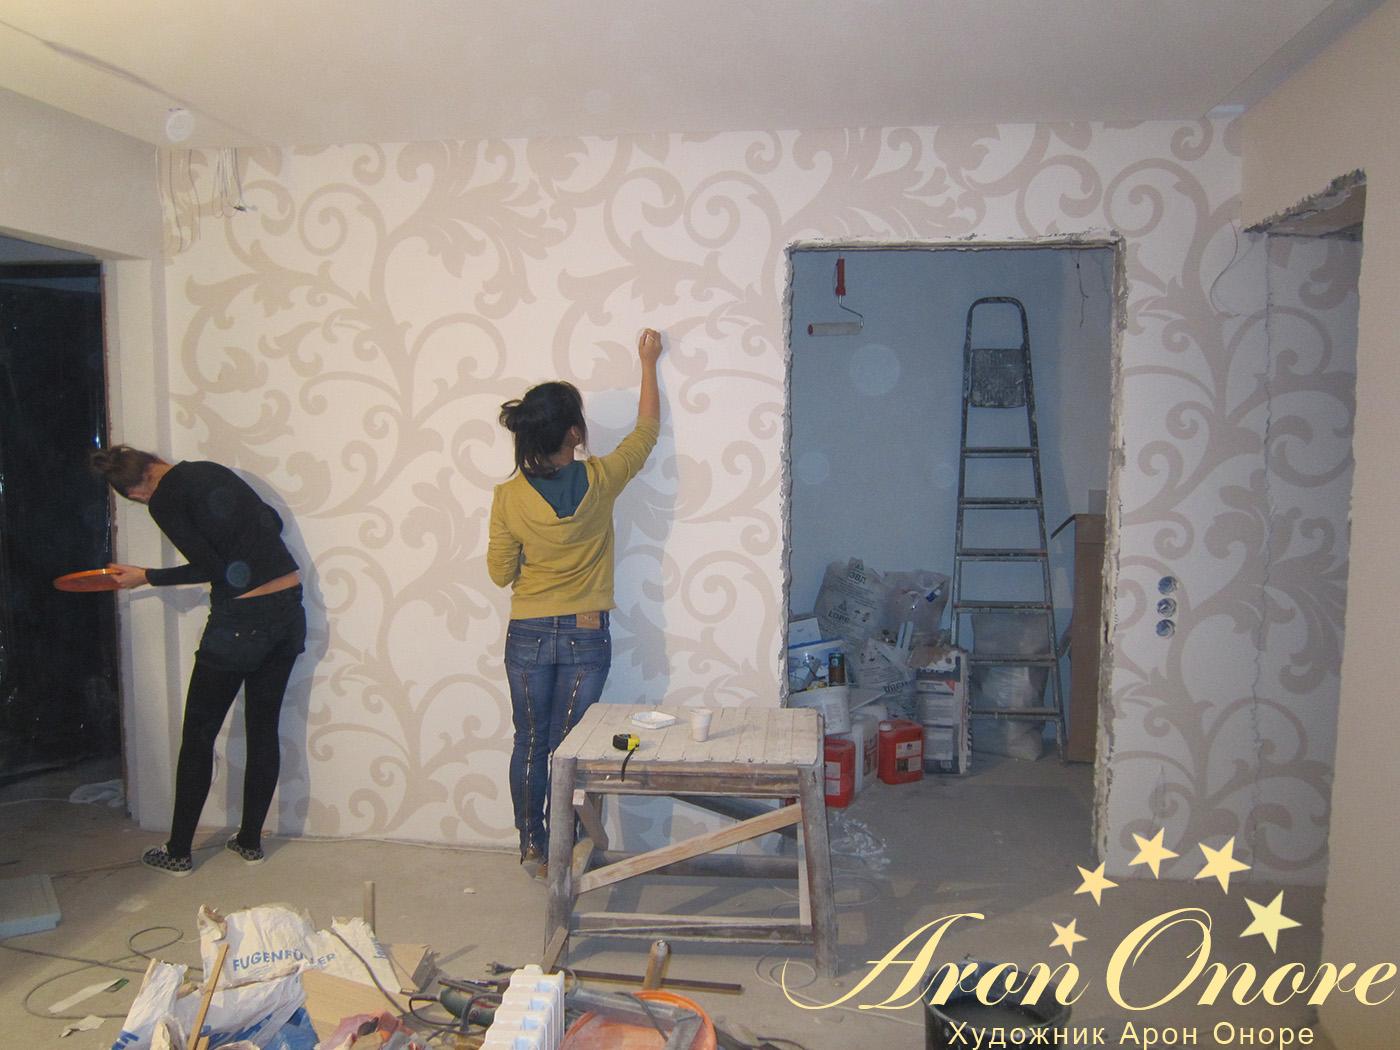 Процесс роспись стен художниками – в московской квартире